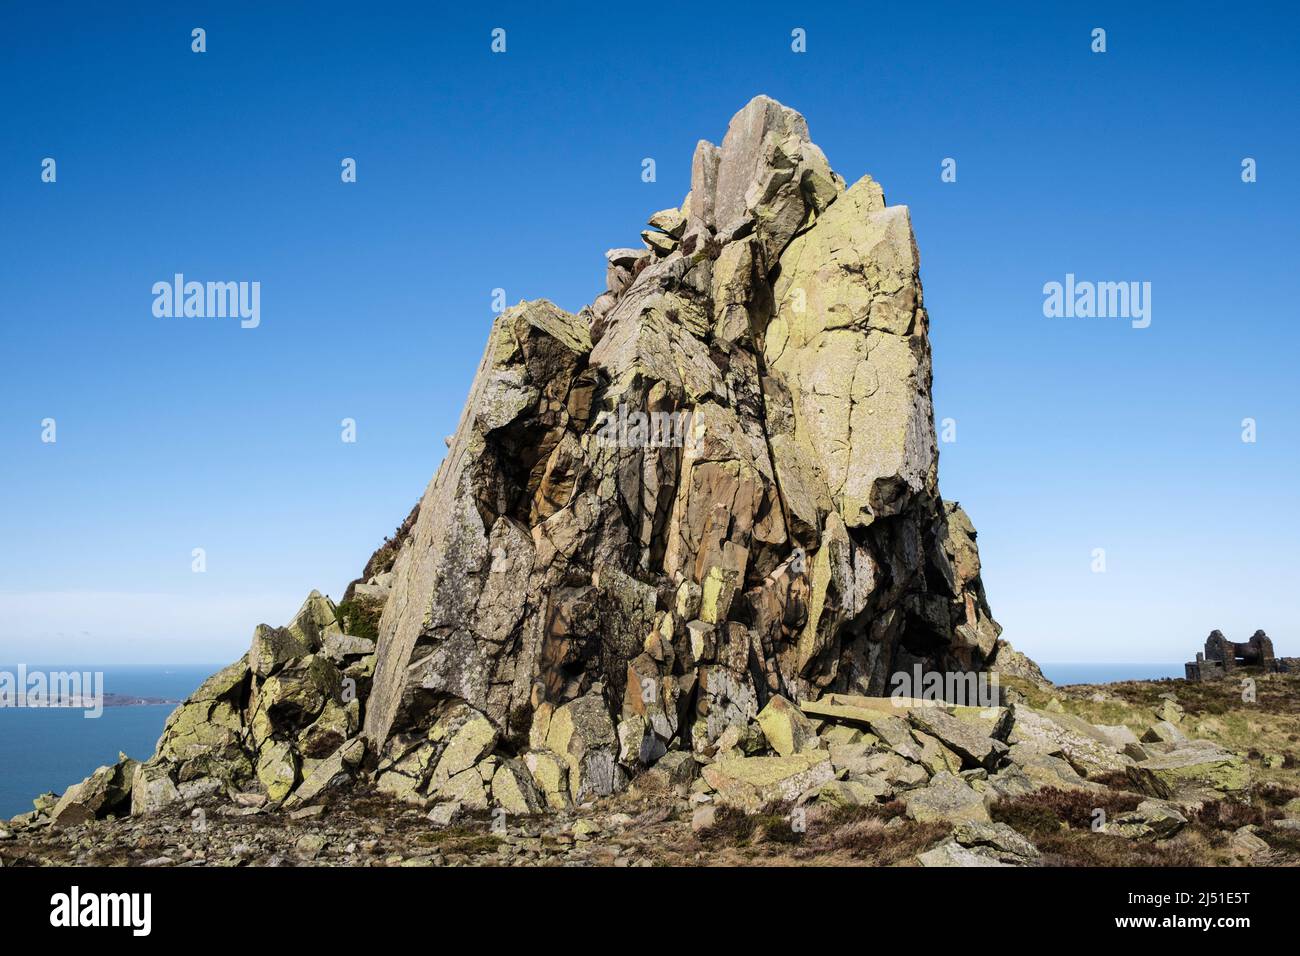 Affleurement rocheux dans la carrière de Penmaenmawr au-dessus de la côte nord. Llanfairfechan, Conwy, nord du pays de Galles, Royaume-Uni, Grande-Bretagne Banque D'Images